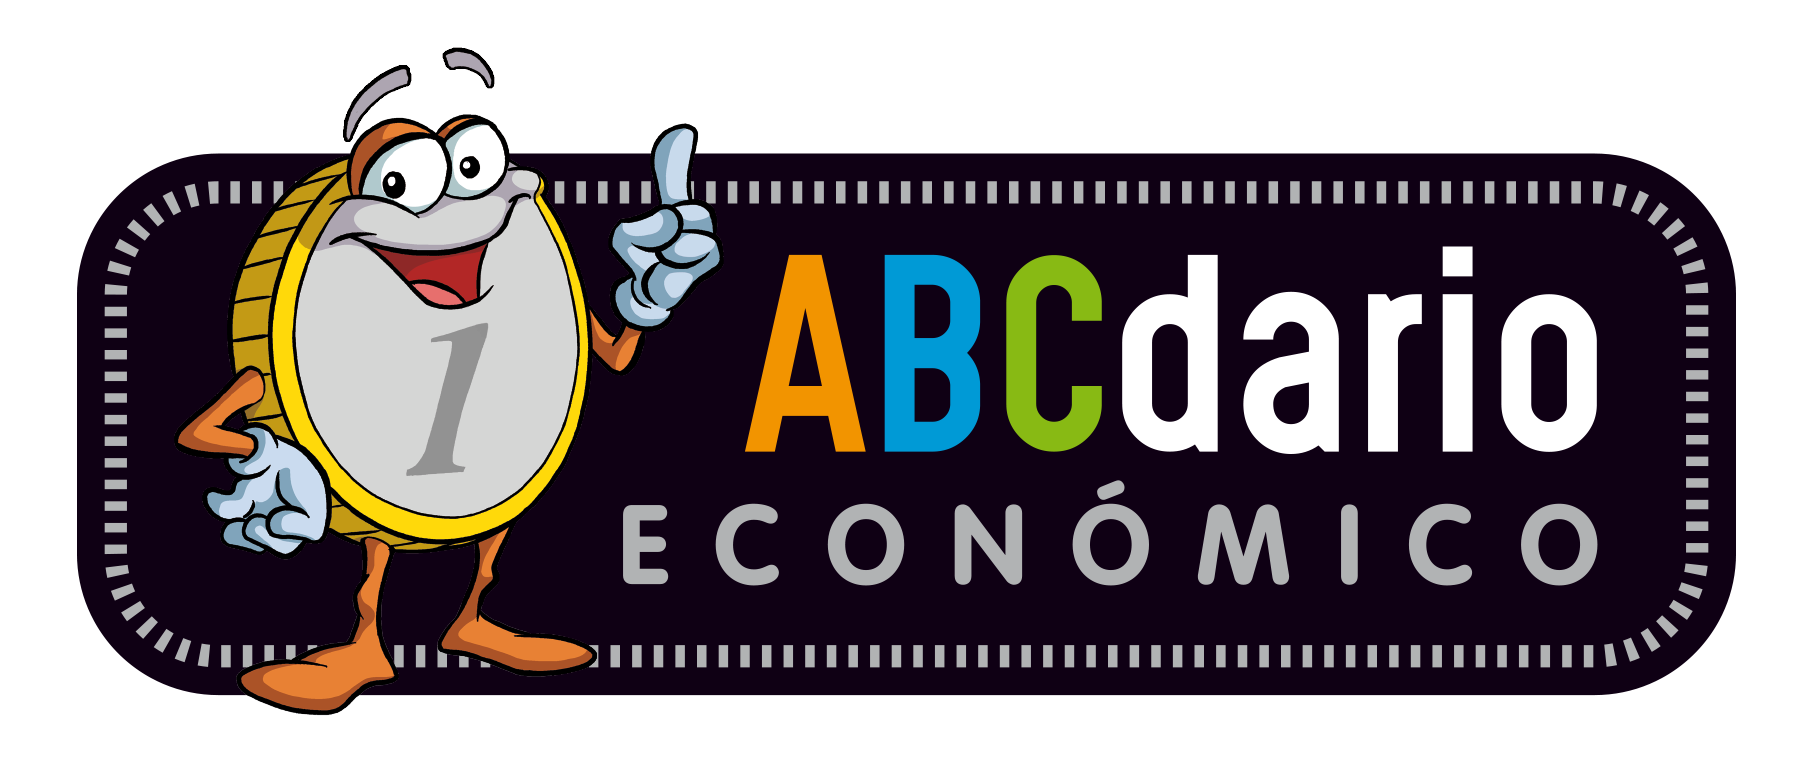 Icono de ABCdario económico